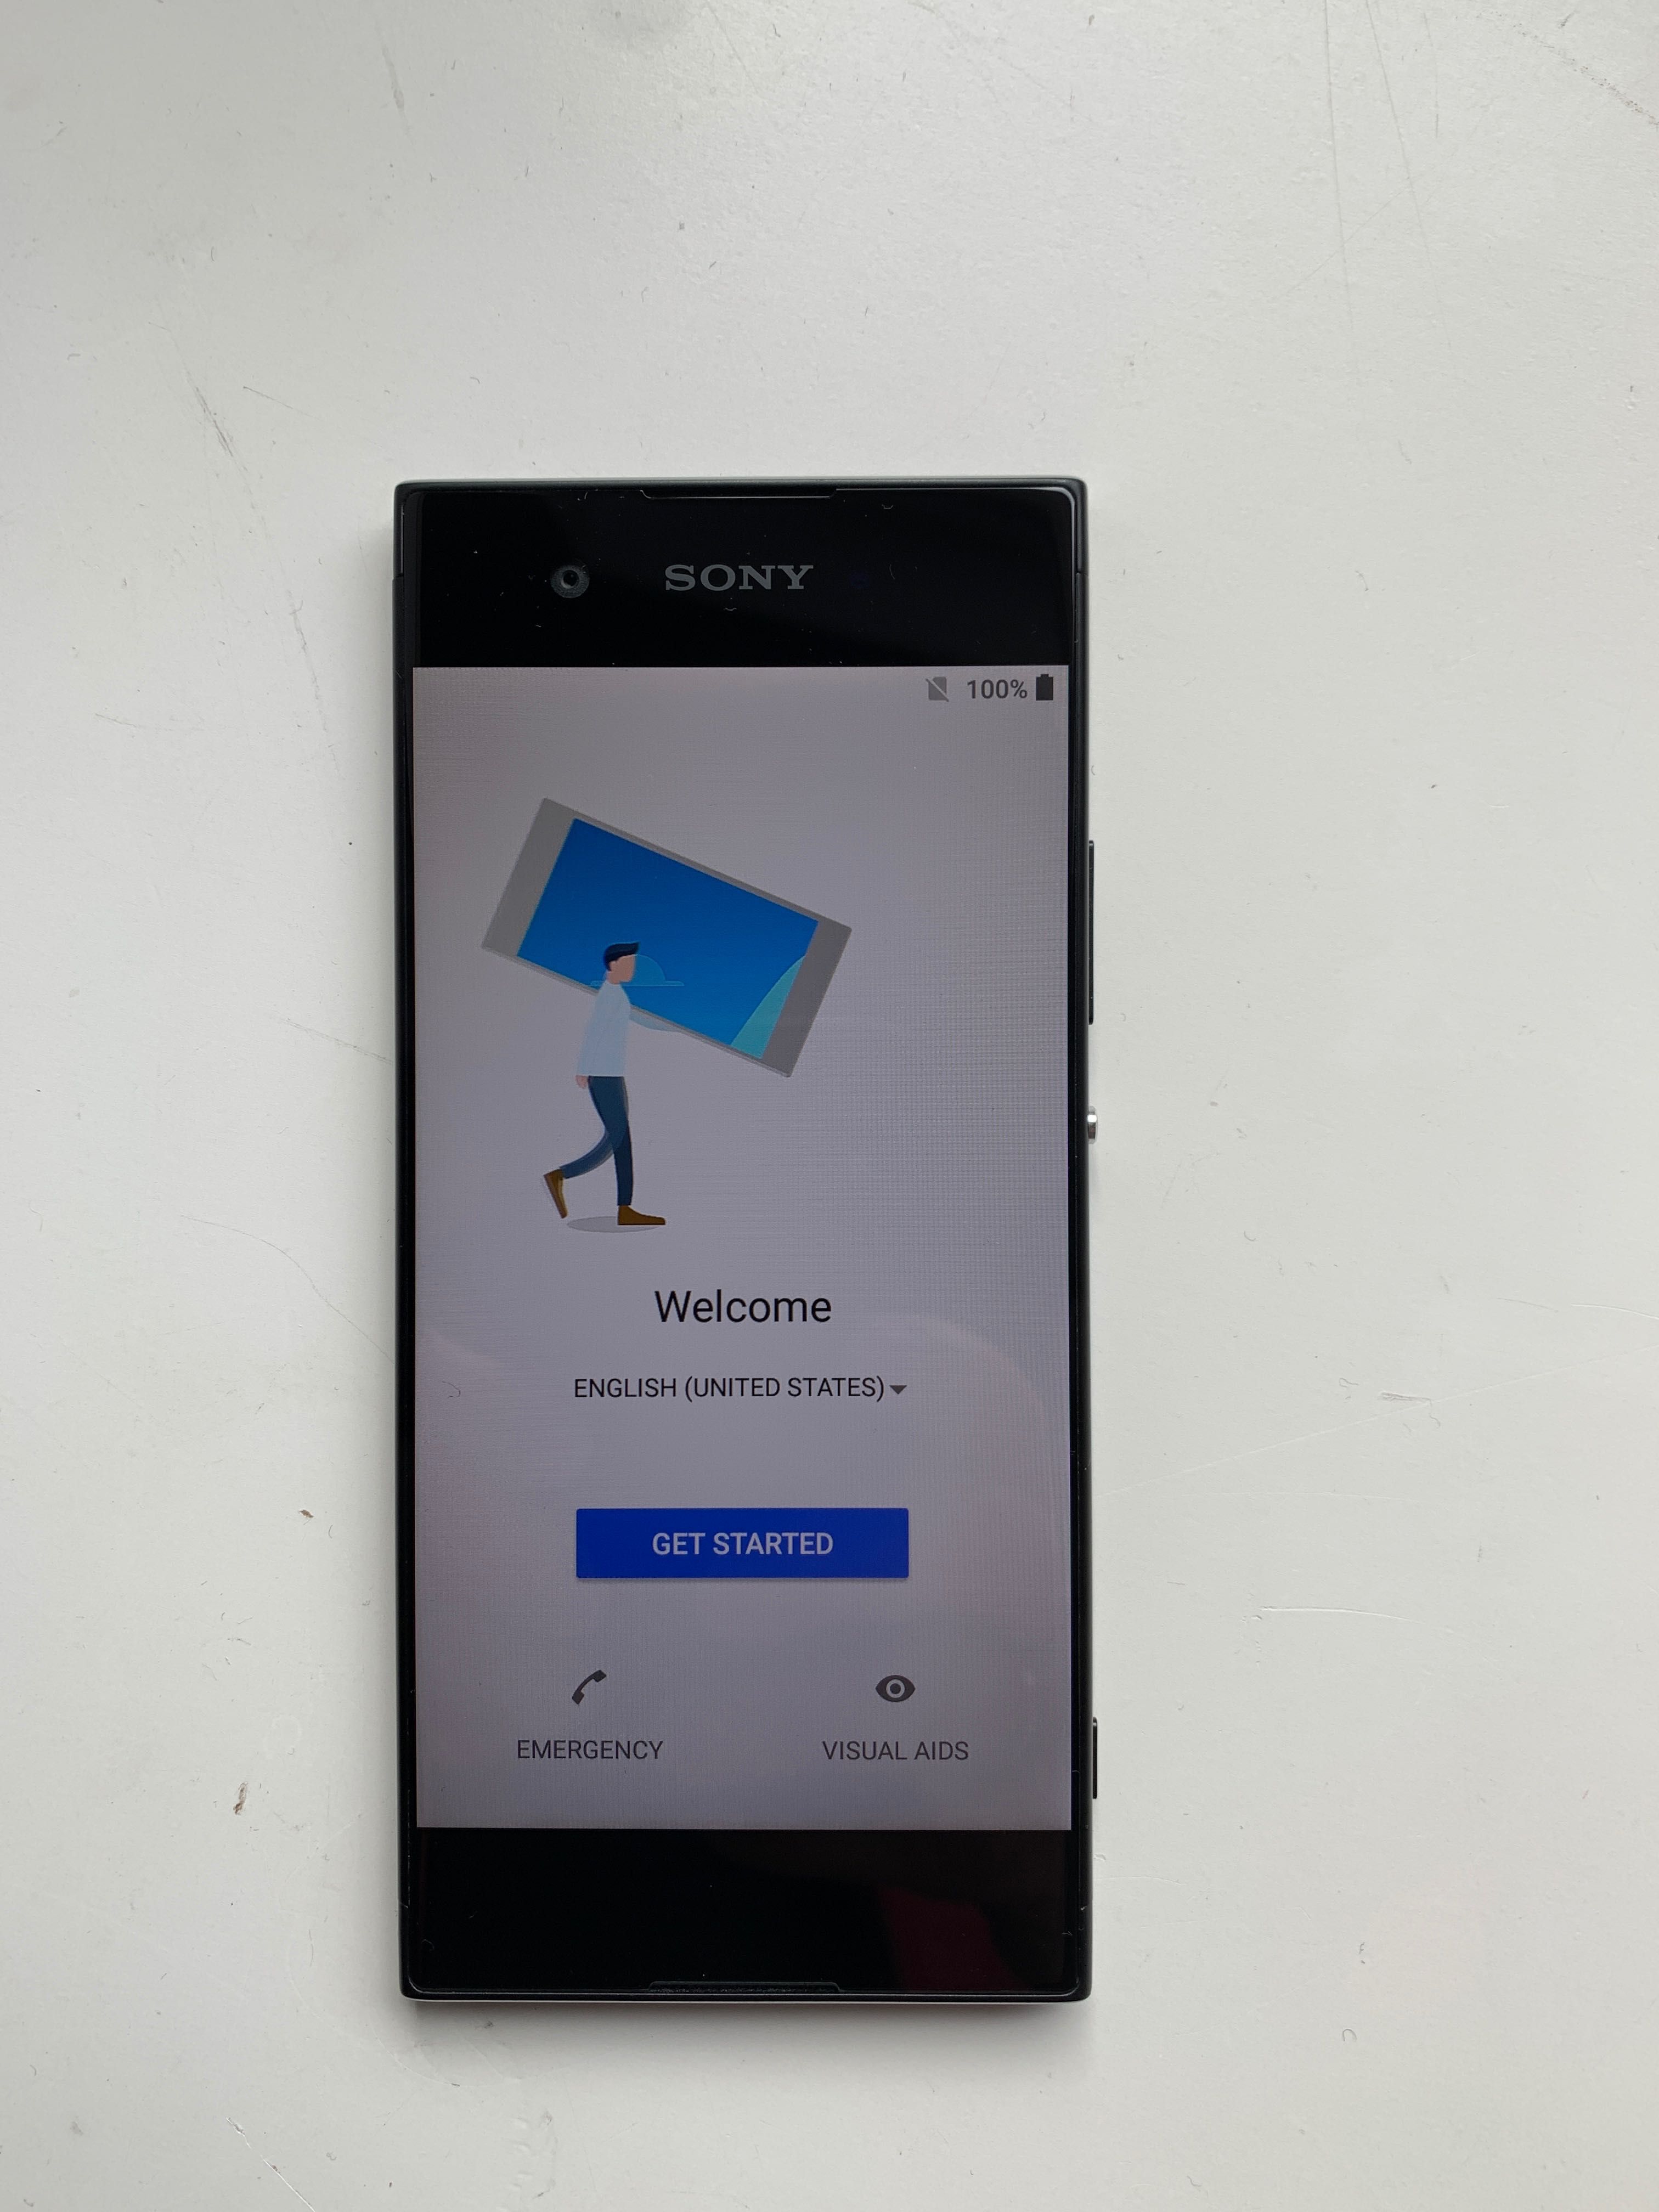 Sony Xperia XA1 G3121 Black 3 GB/32GB bez ryski 100% oryginalny